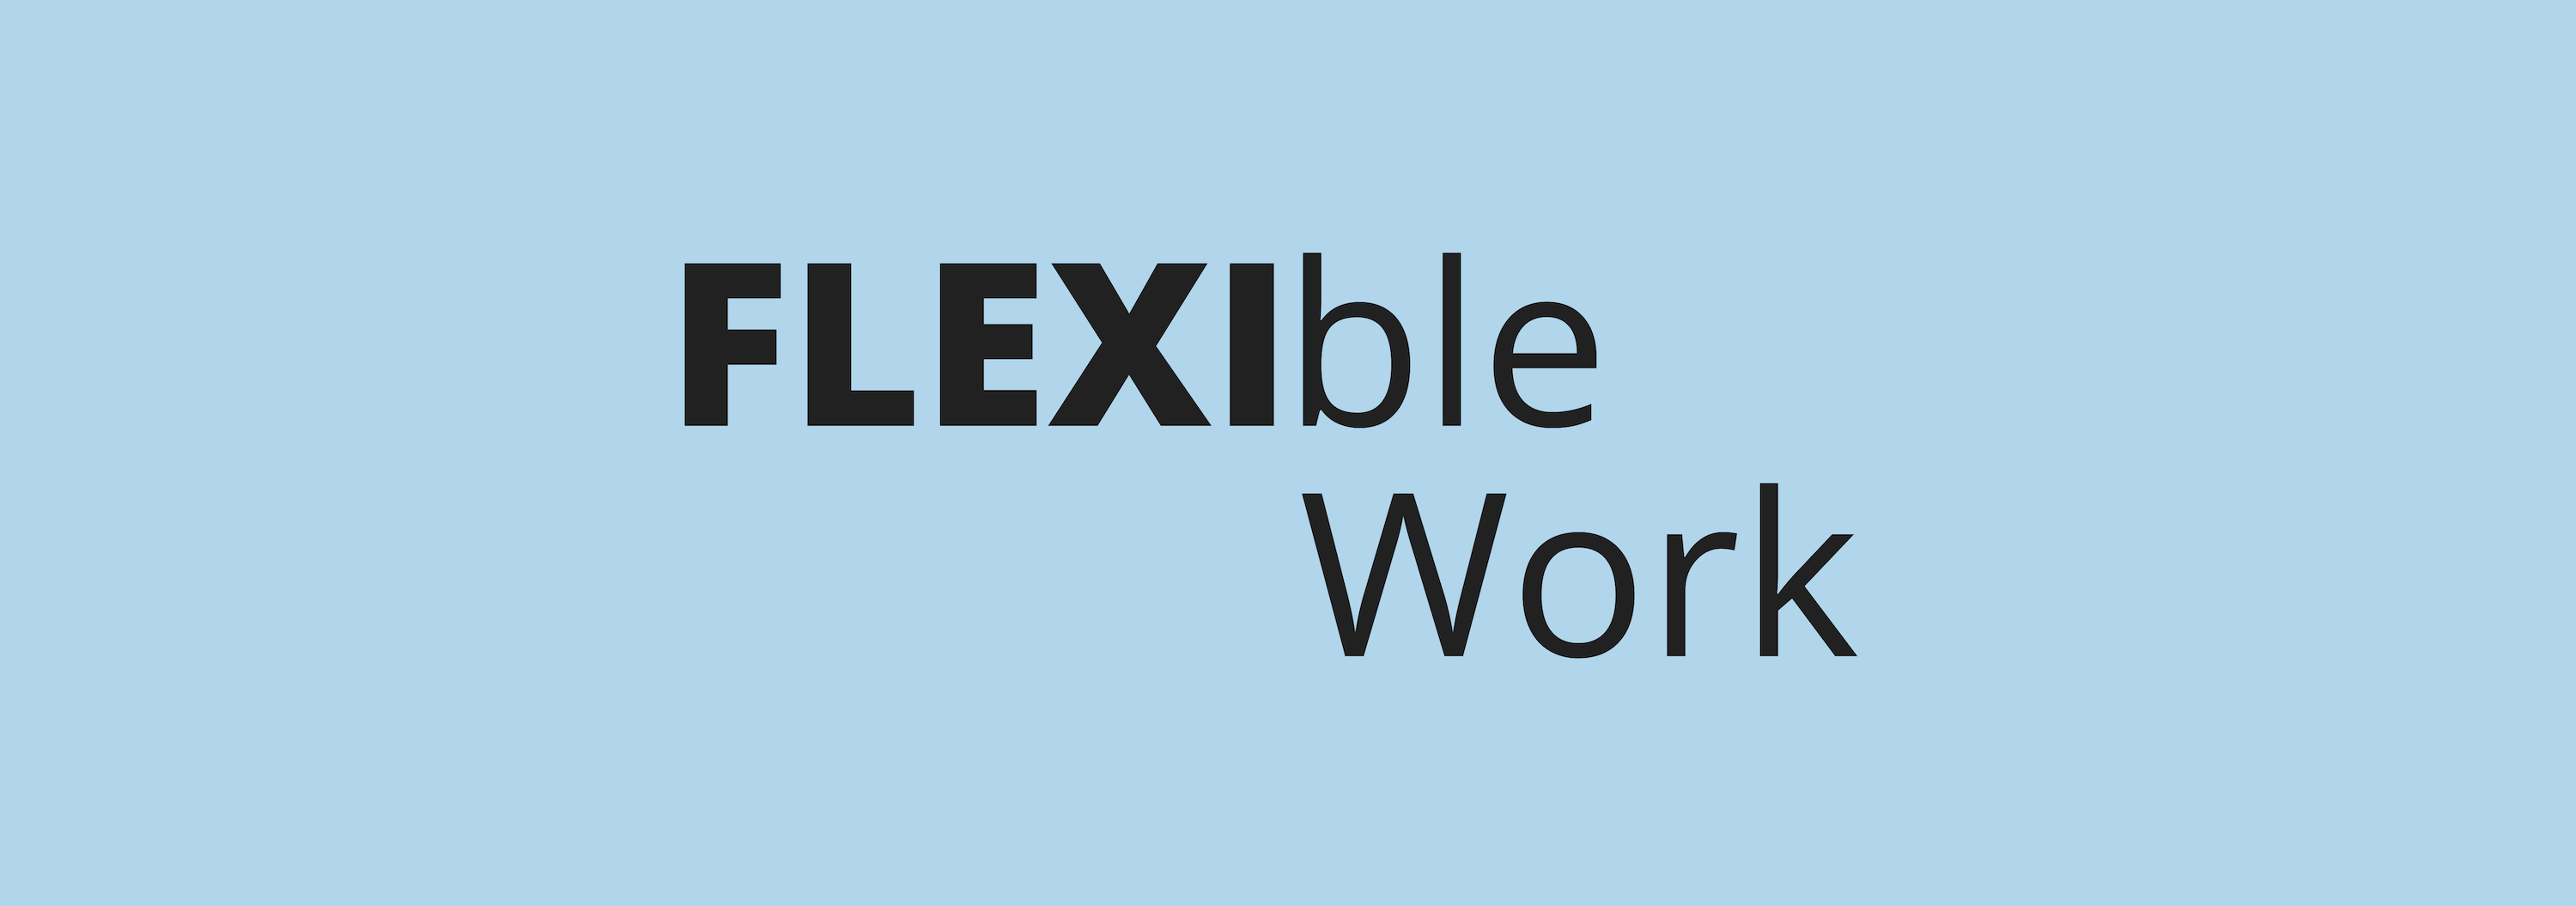 Top 5 HR Trends _Flexible working